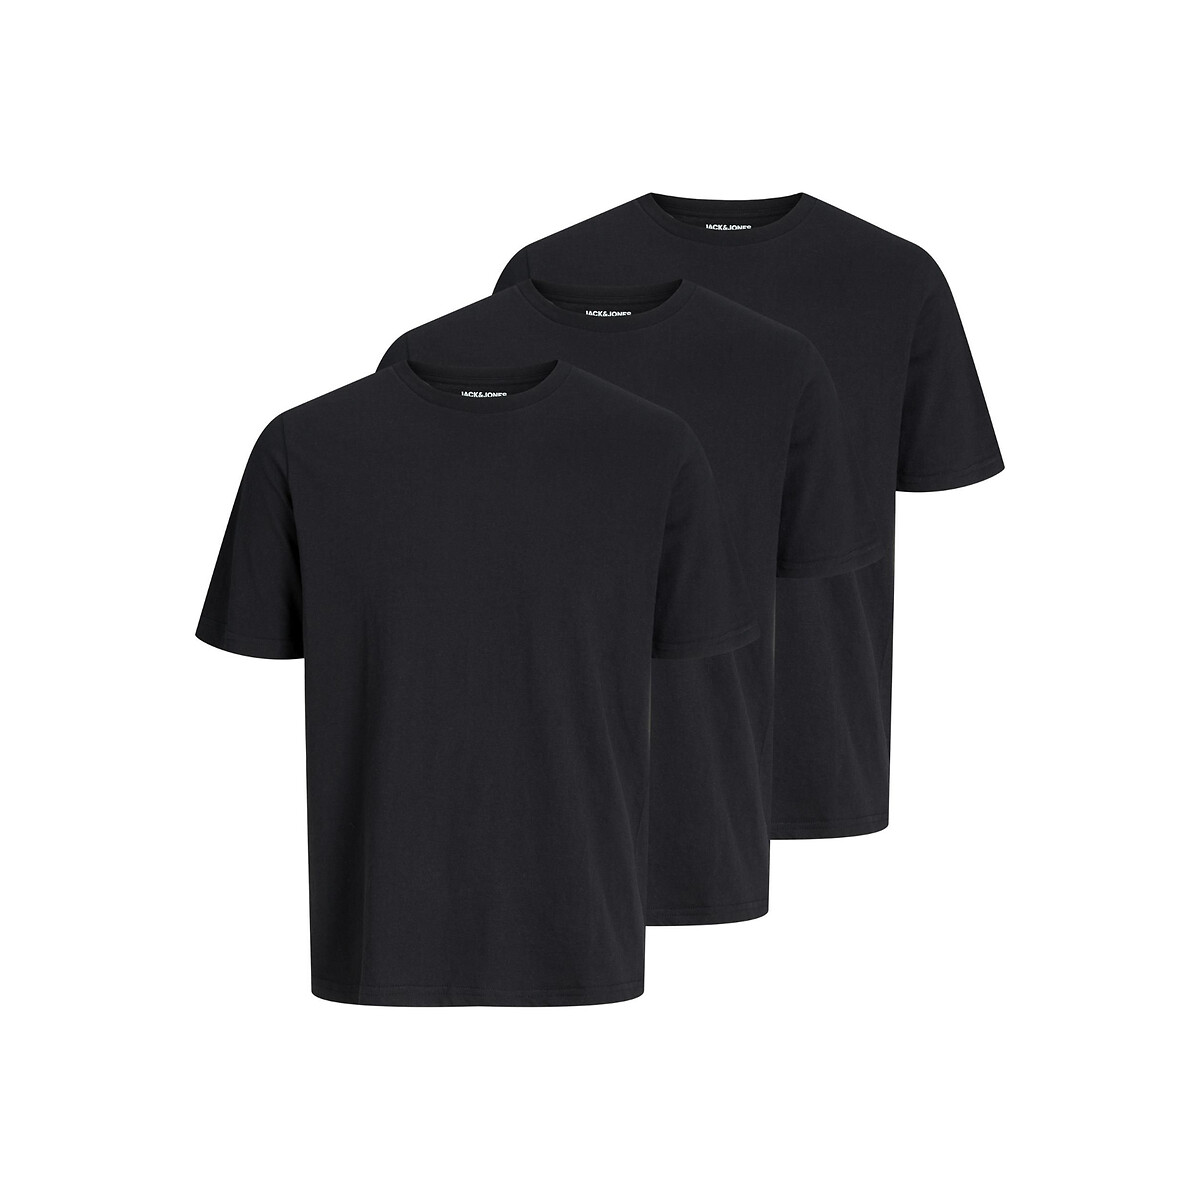 Комплект из трех футболок с круглым вырезом XL черный комплект из трех футболок с круглым вырезом 3 мес 60 см разноцветный